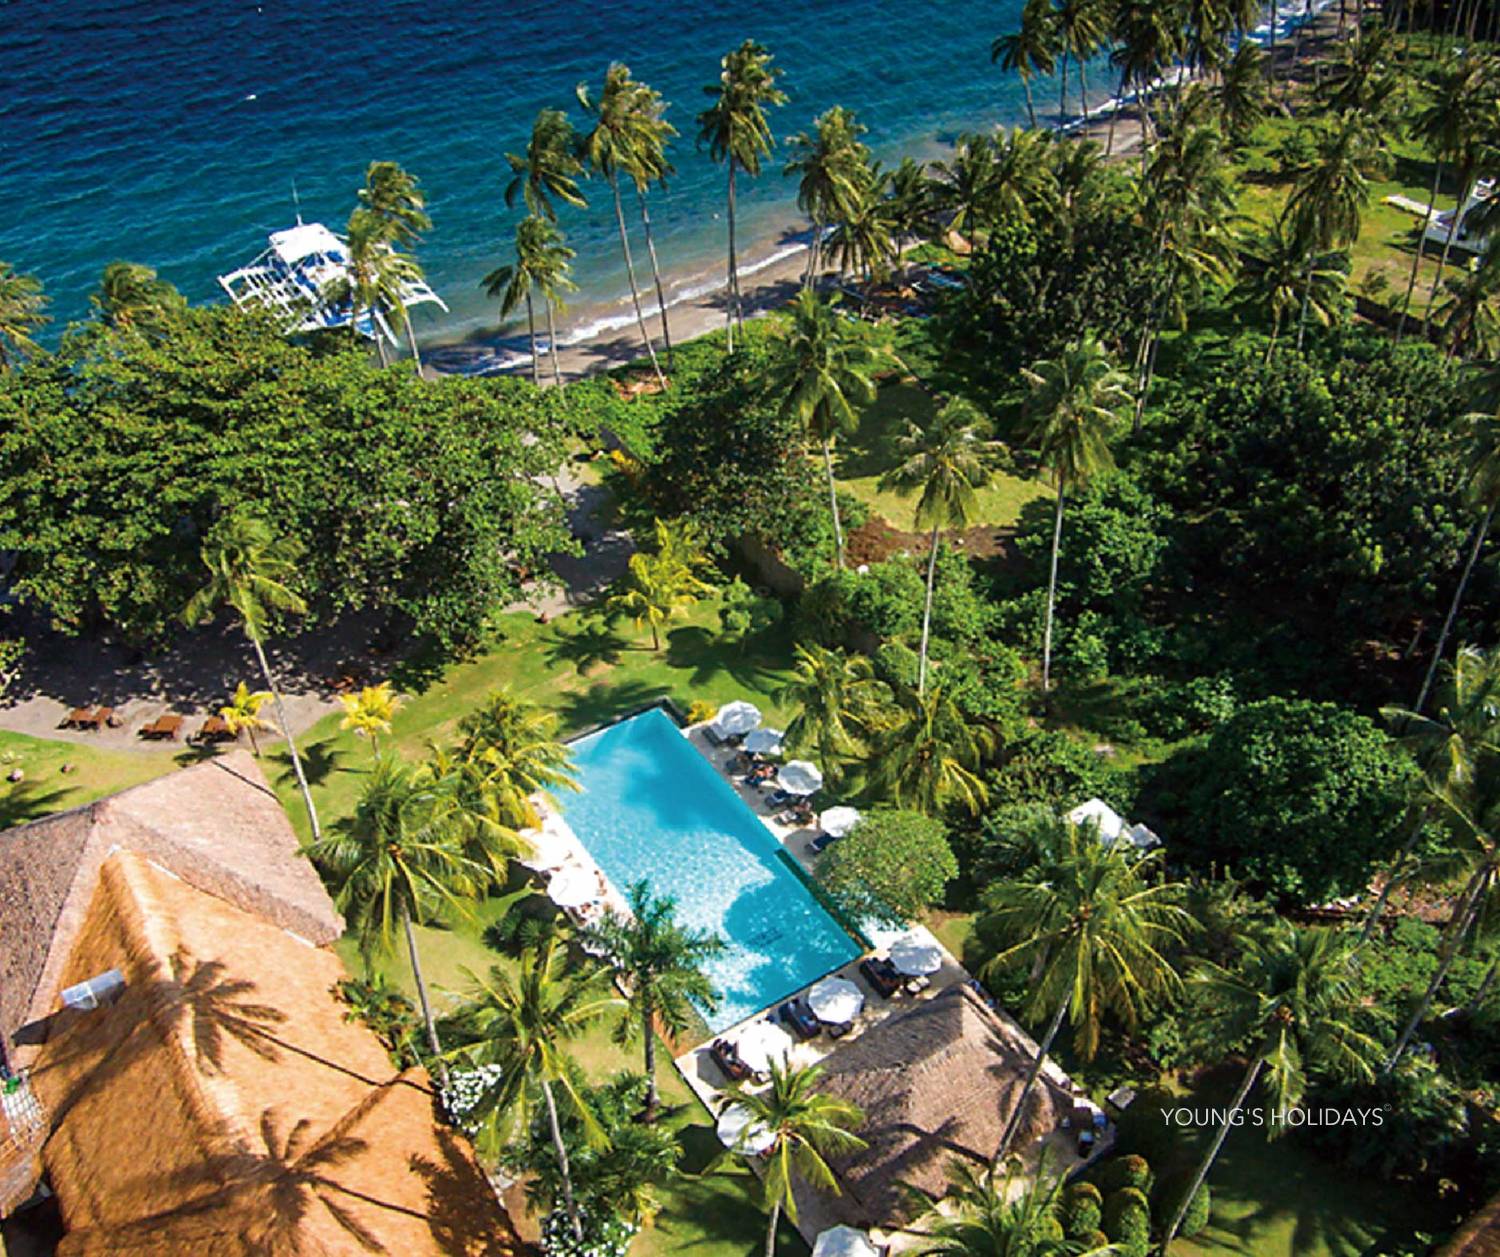 【菲律賓】杜馬加德 Atmosphere Resorts & Spa 5日4夜潛水自由行套票